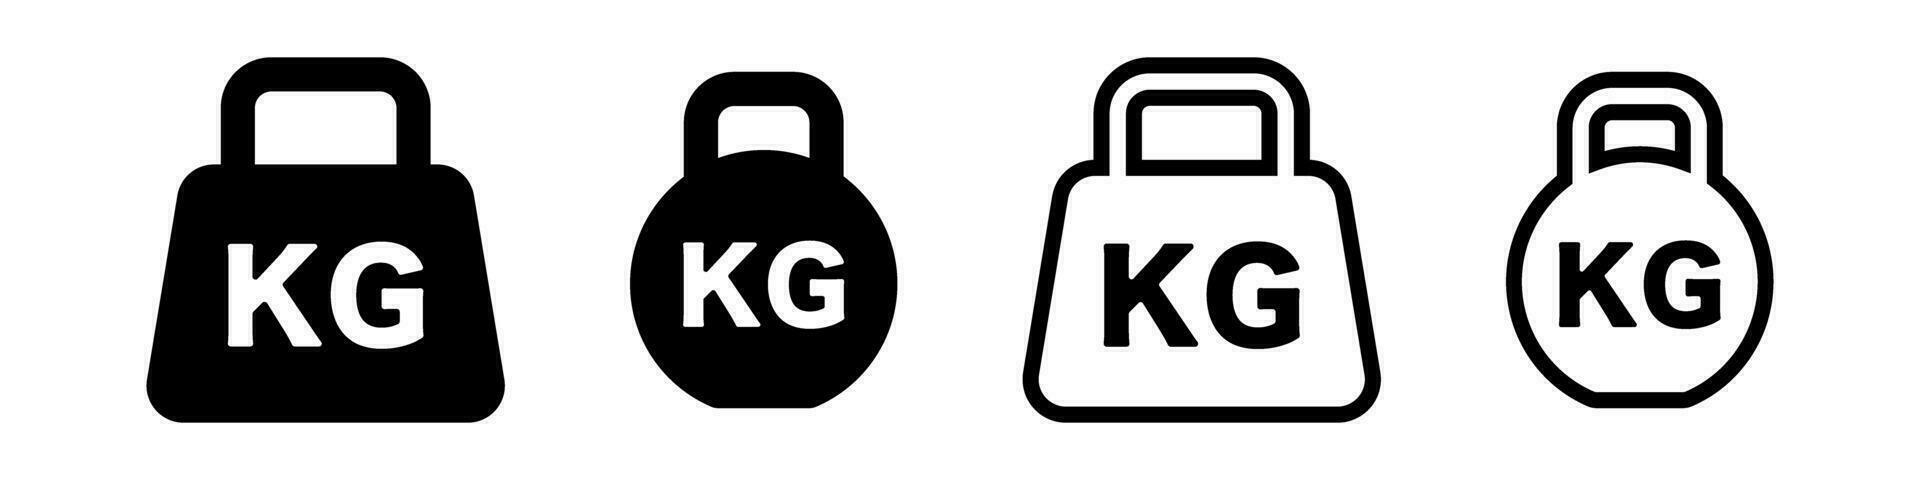 Kilogramm Gewicht Symbol Satz. kg Satz. trainieren und Gewicht Ausbildung. Vektor. vektor